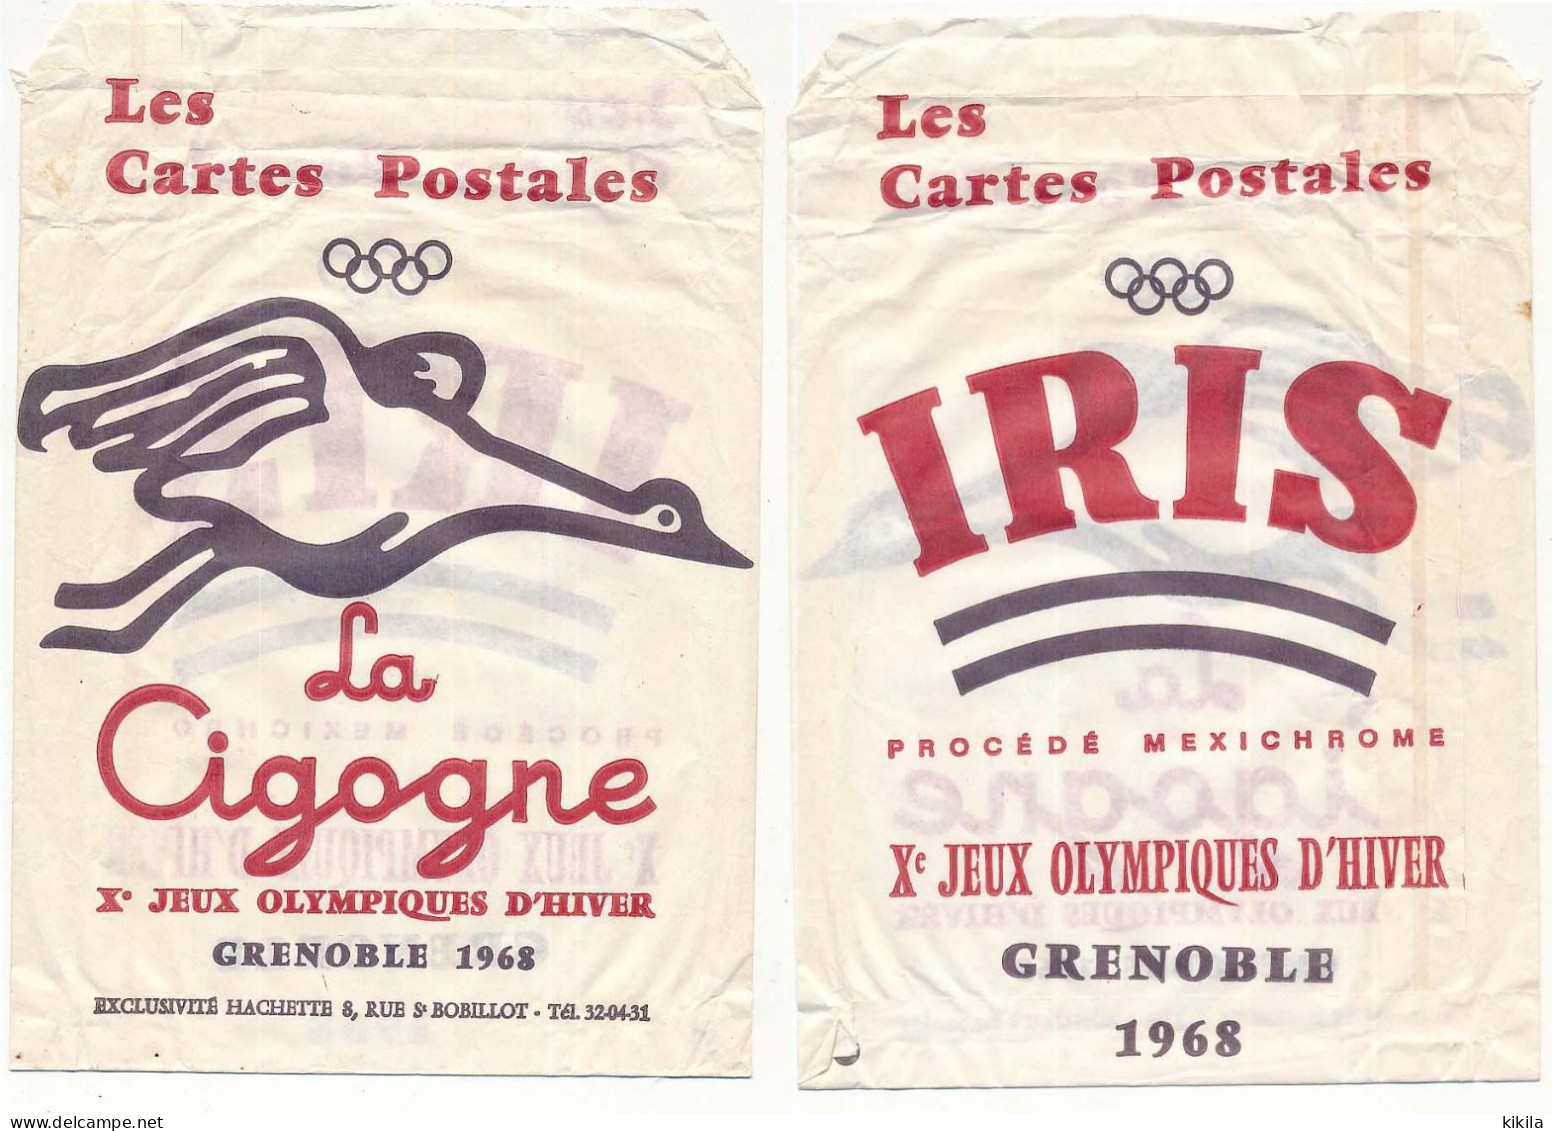 Pochette Papier Pour Cartes Postale Des Editions De La Cigogne X° Jeux Olympiques D'Hiver Grenoble 1968 - Habillement, Souvenirs & Autres